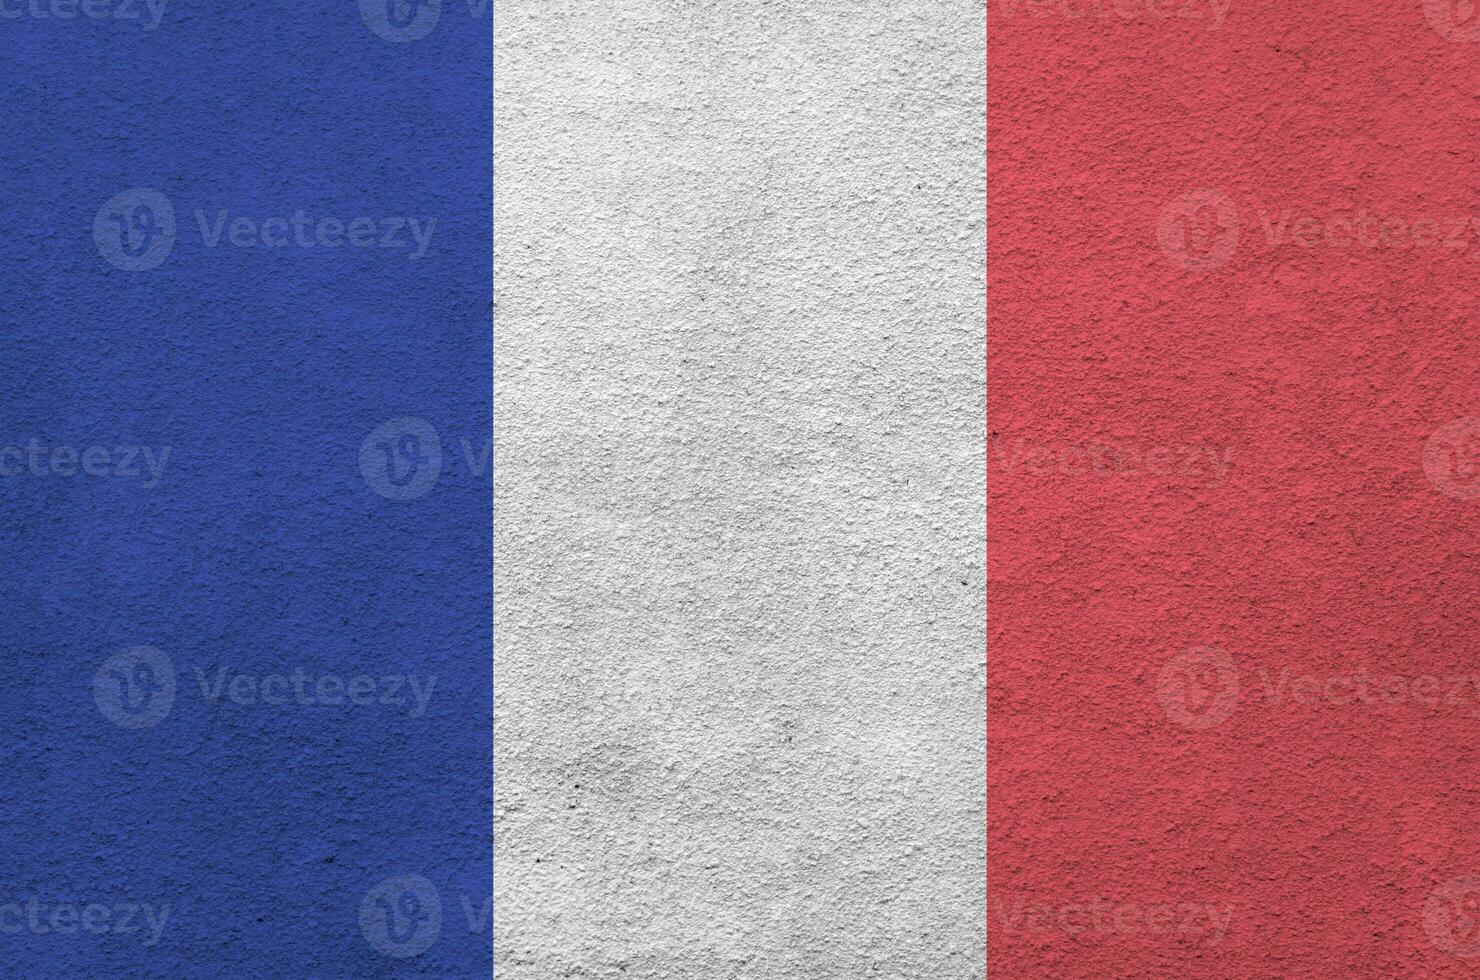 Francia bandiera raffigurato nel luminosa dipingere colori su vecchio sollievo intonacatura parete. strutturato bandiera su ruvido sfondo foto